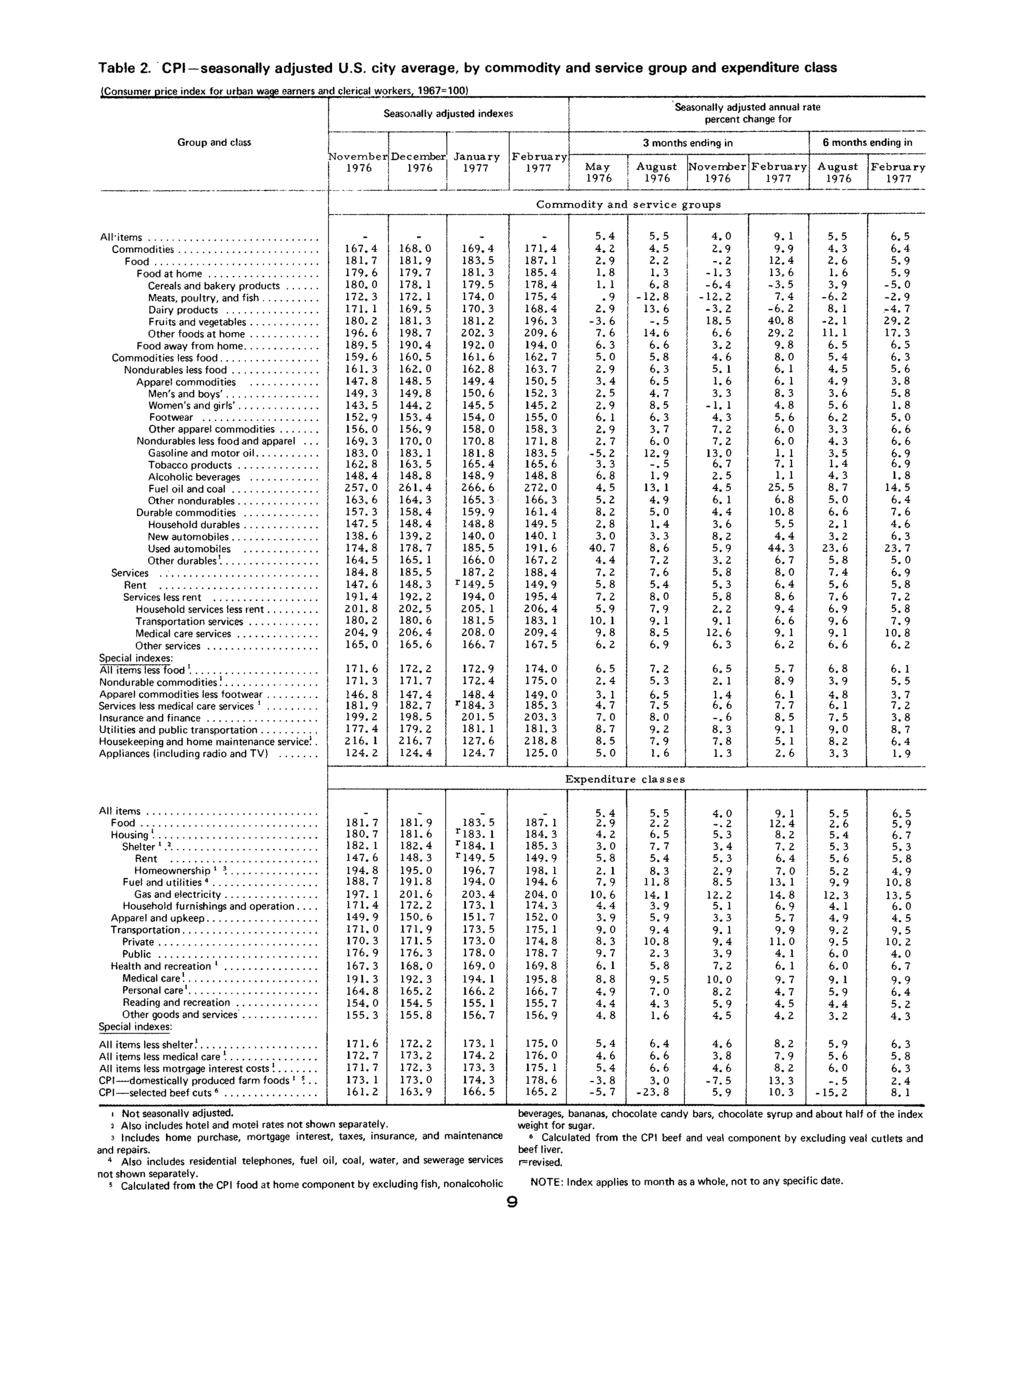 Table. CPI seasonally adjusted U.S.